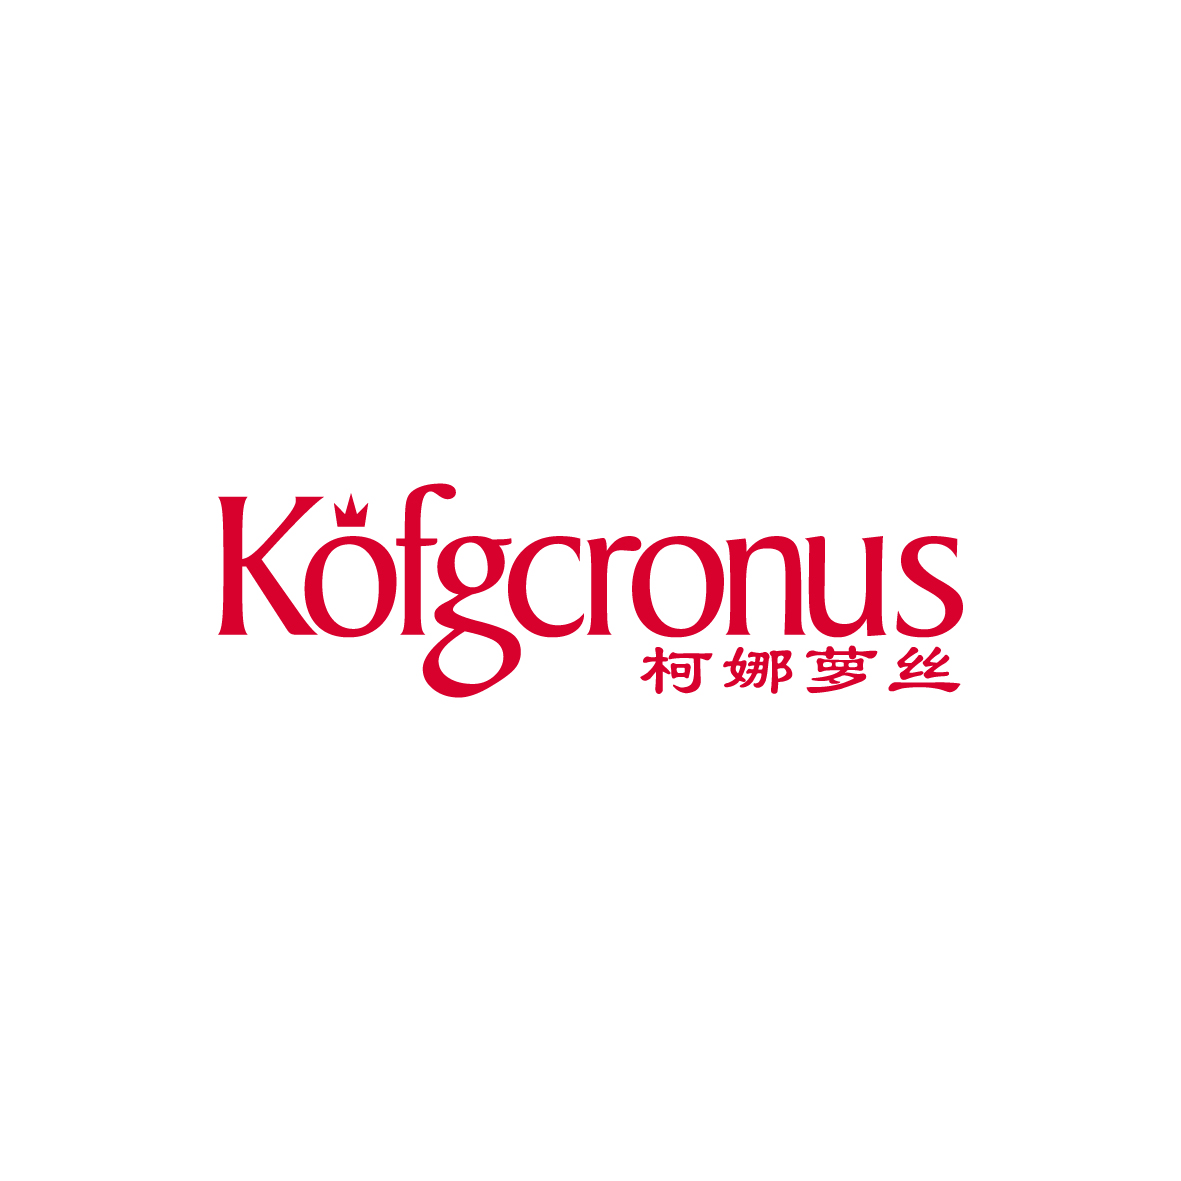 广州品翰文化发展有限公司商标柯娜萝丝 KOFGCRONUS（25类）多少钱？